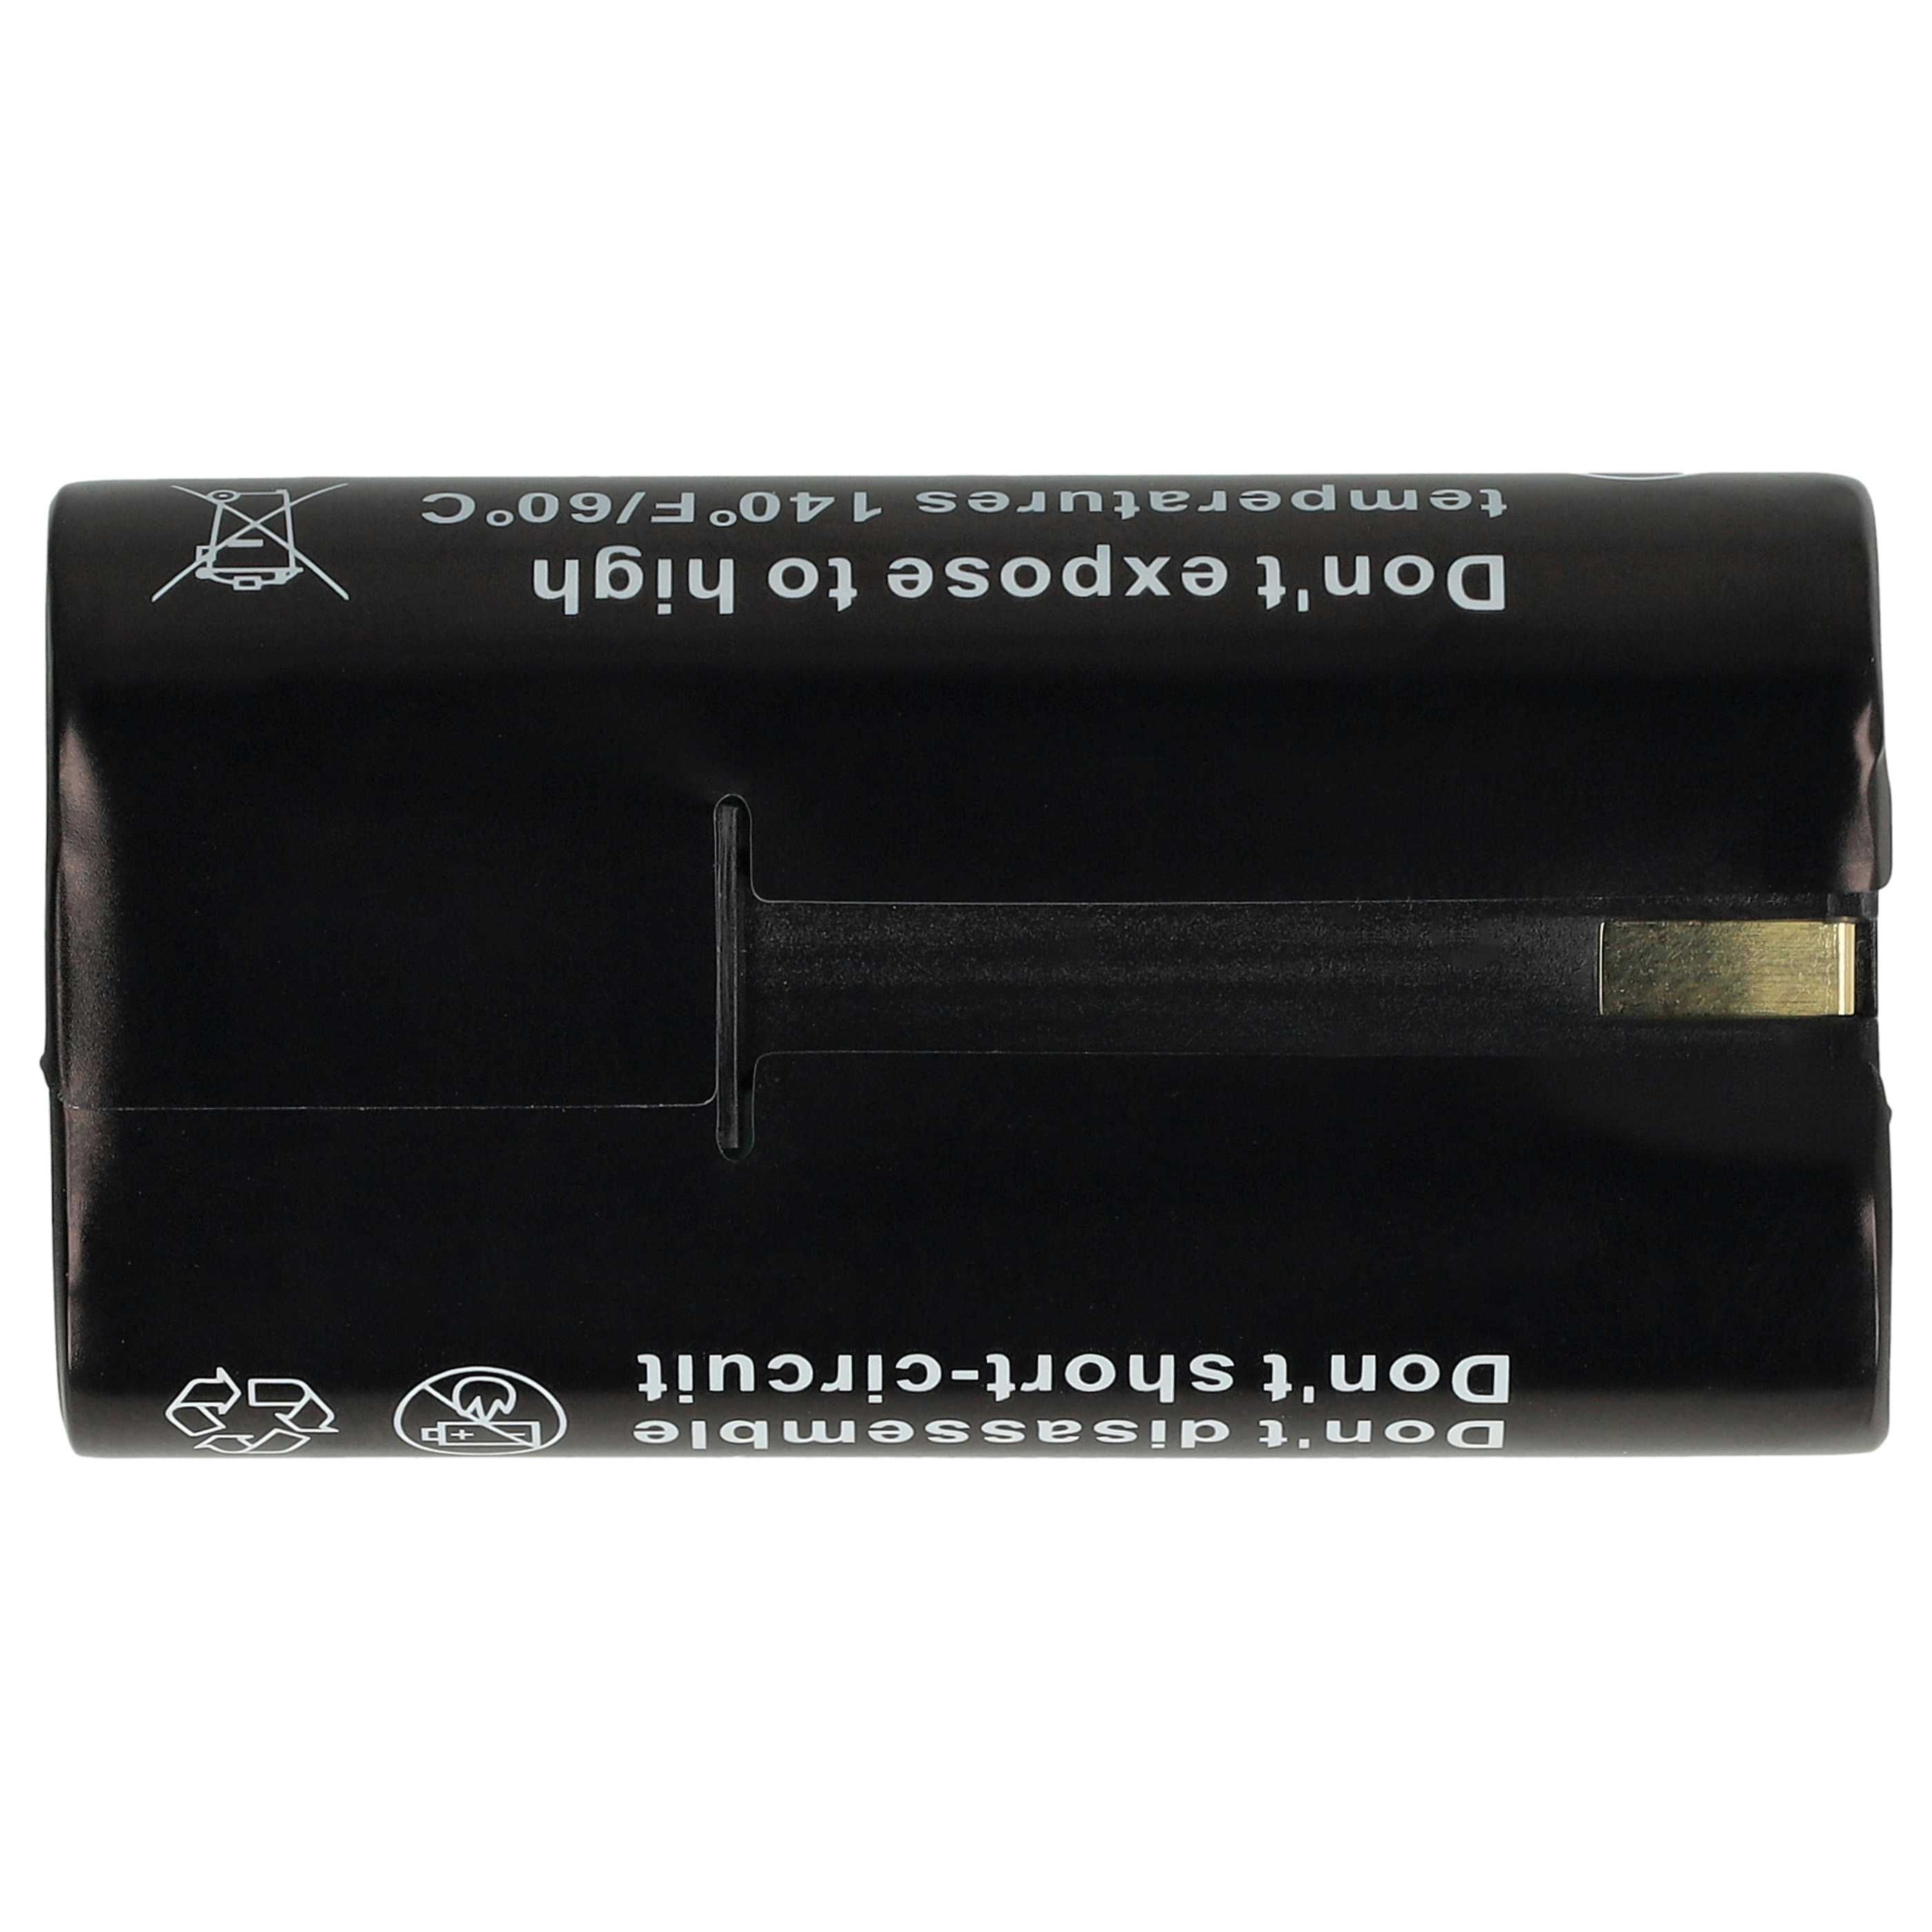 Batterie remplace Kodak Klic-8000, RB50 pour appareil photo - 1520mAh 3,6V Li-ion